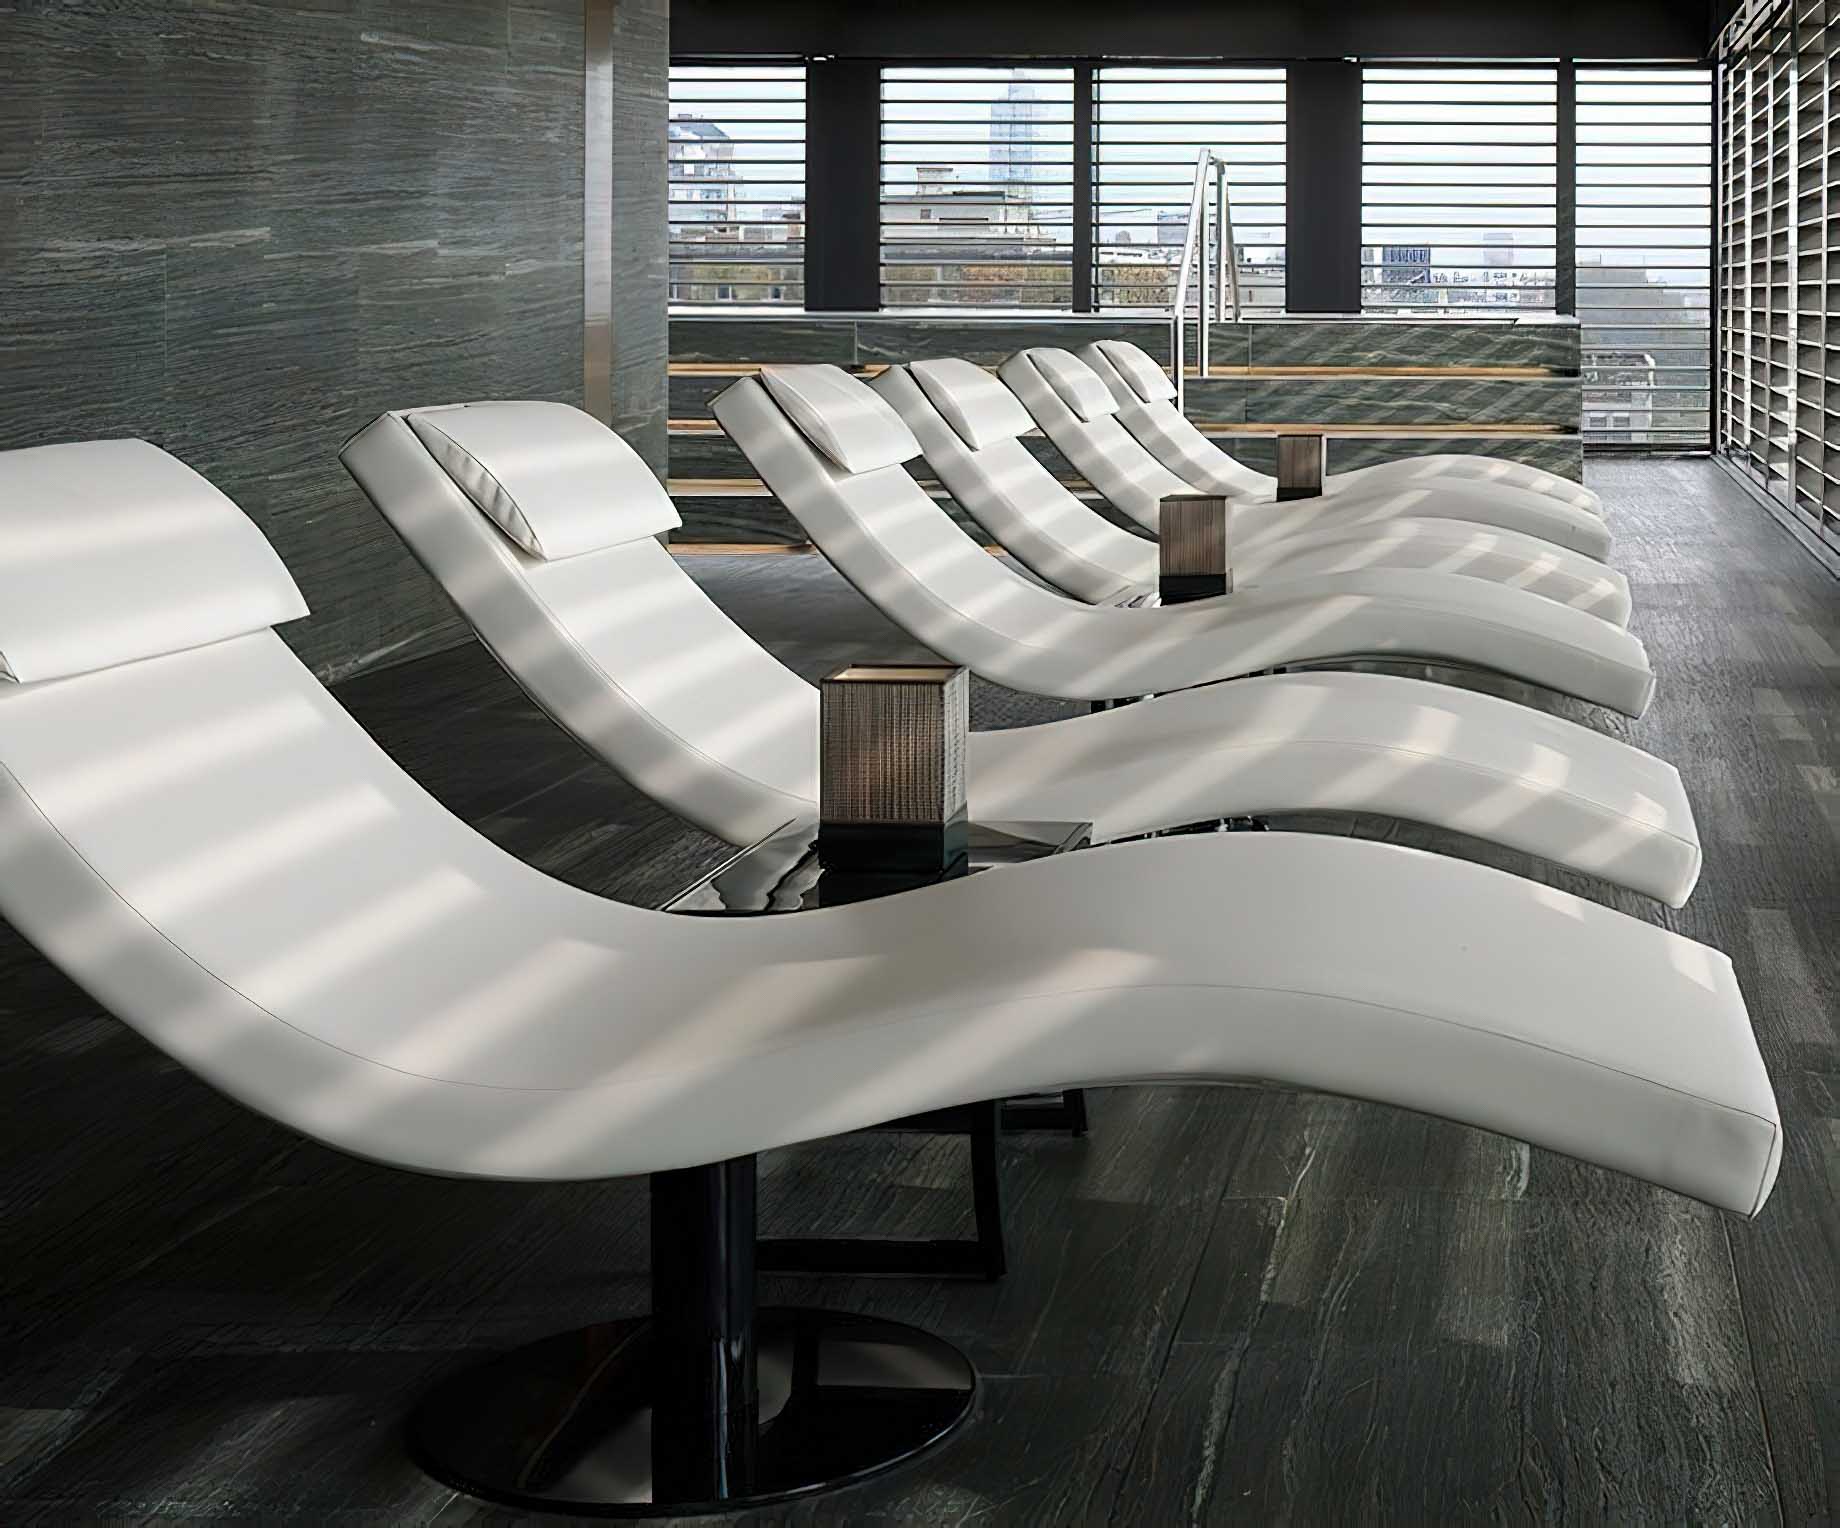 121 – Armani Hotel Milano – Milan, Italy – Armani SPA Lounge Chairs